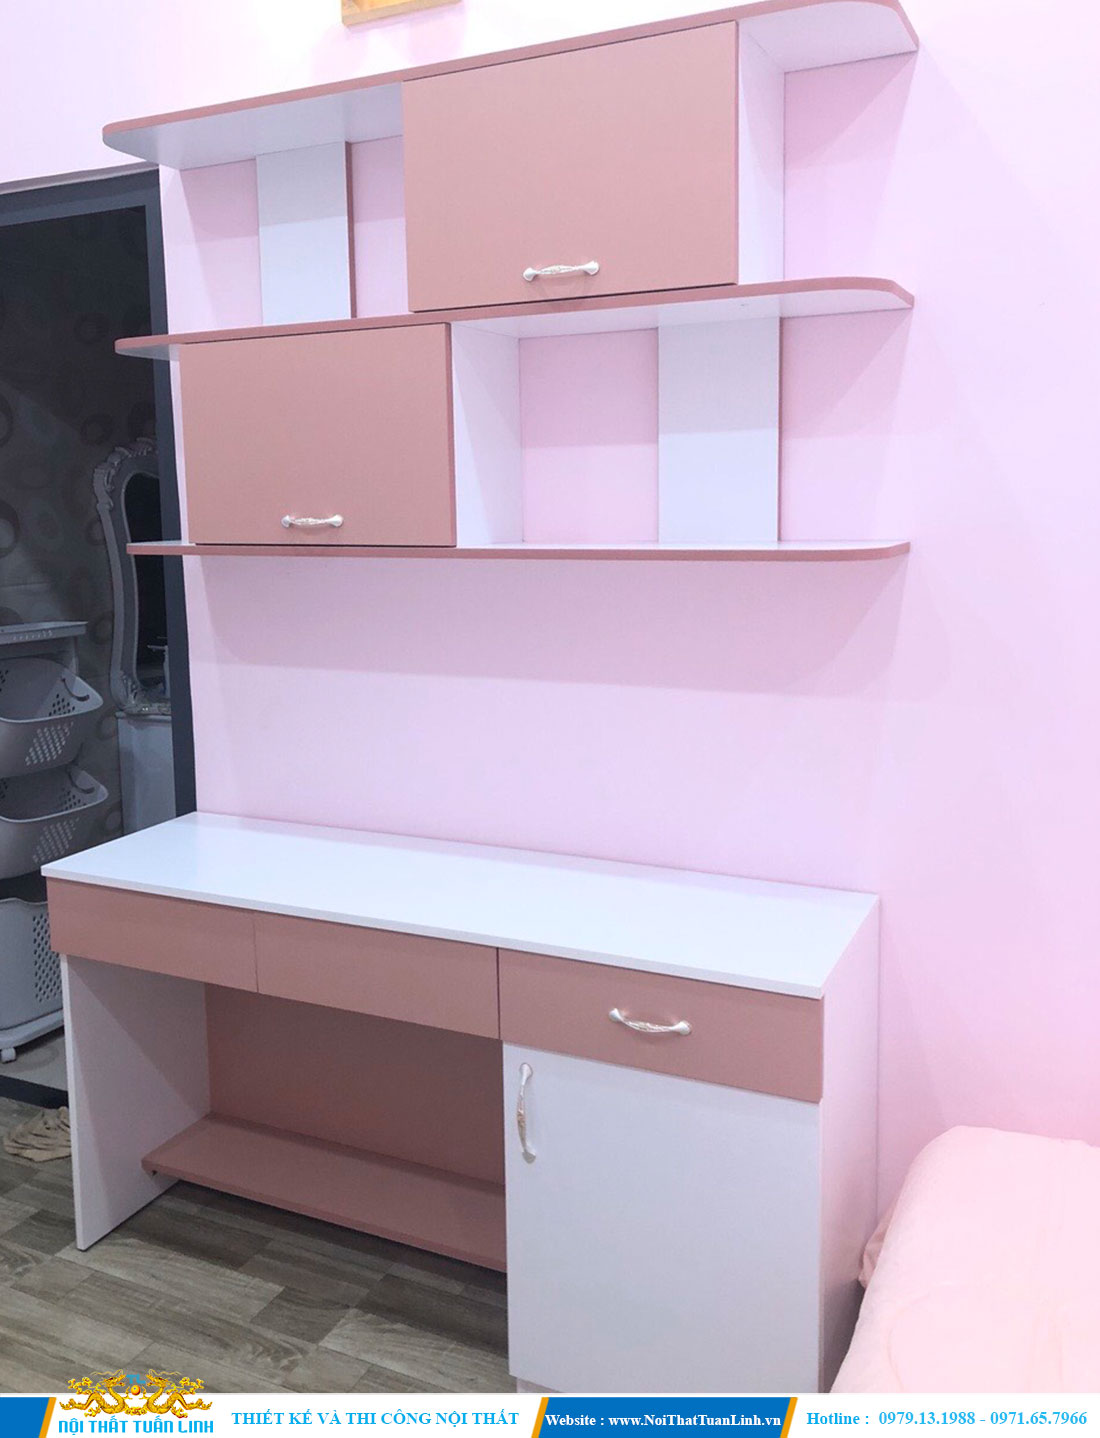 Thiết kế thi công nội thất phòng ngủ với tone màu hồng nhẹ nhàng 1